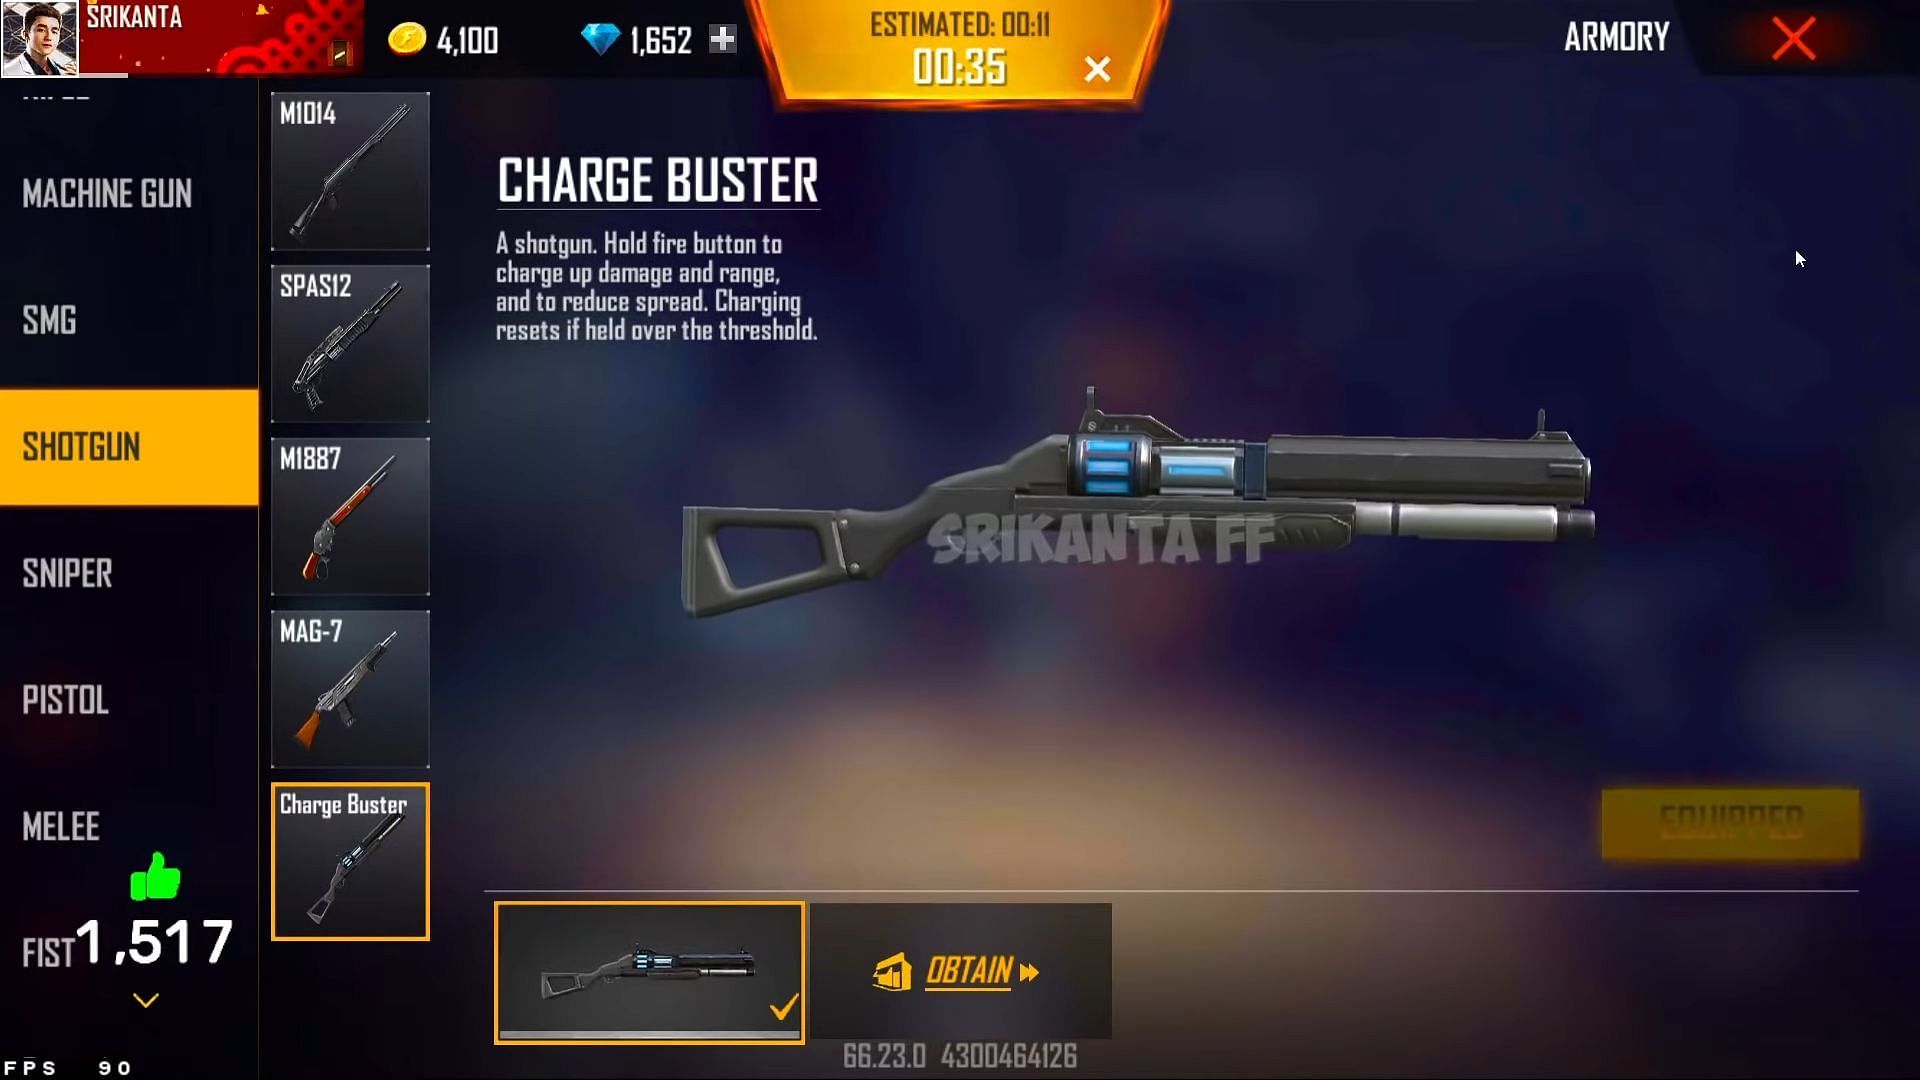 New gun (Image via Srikanta FF / YouTube)